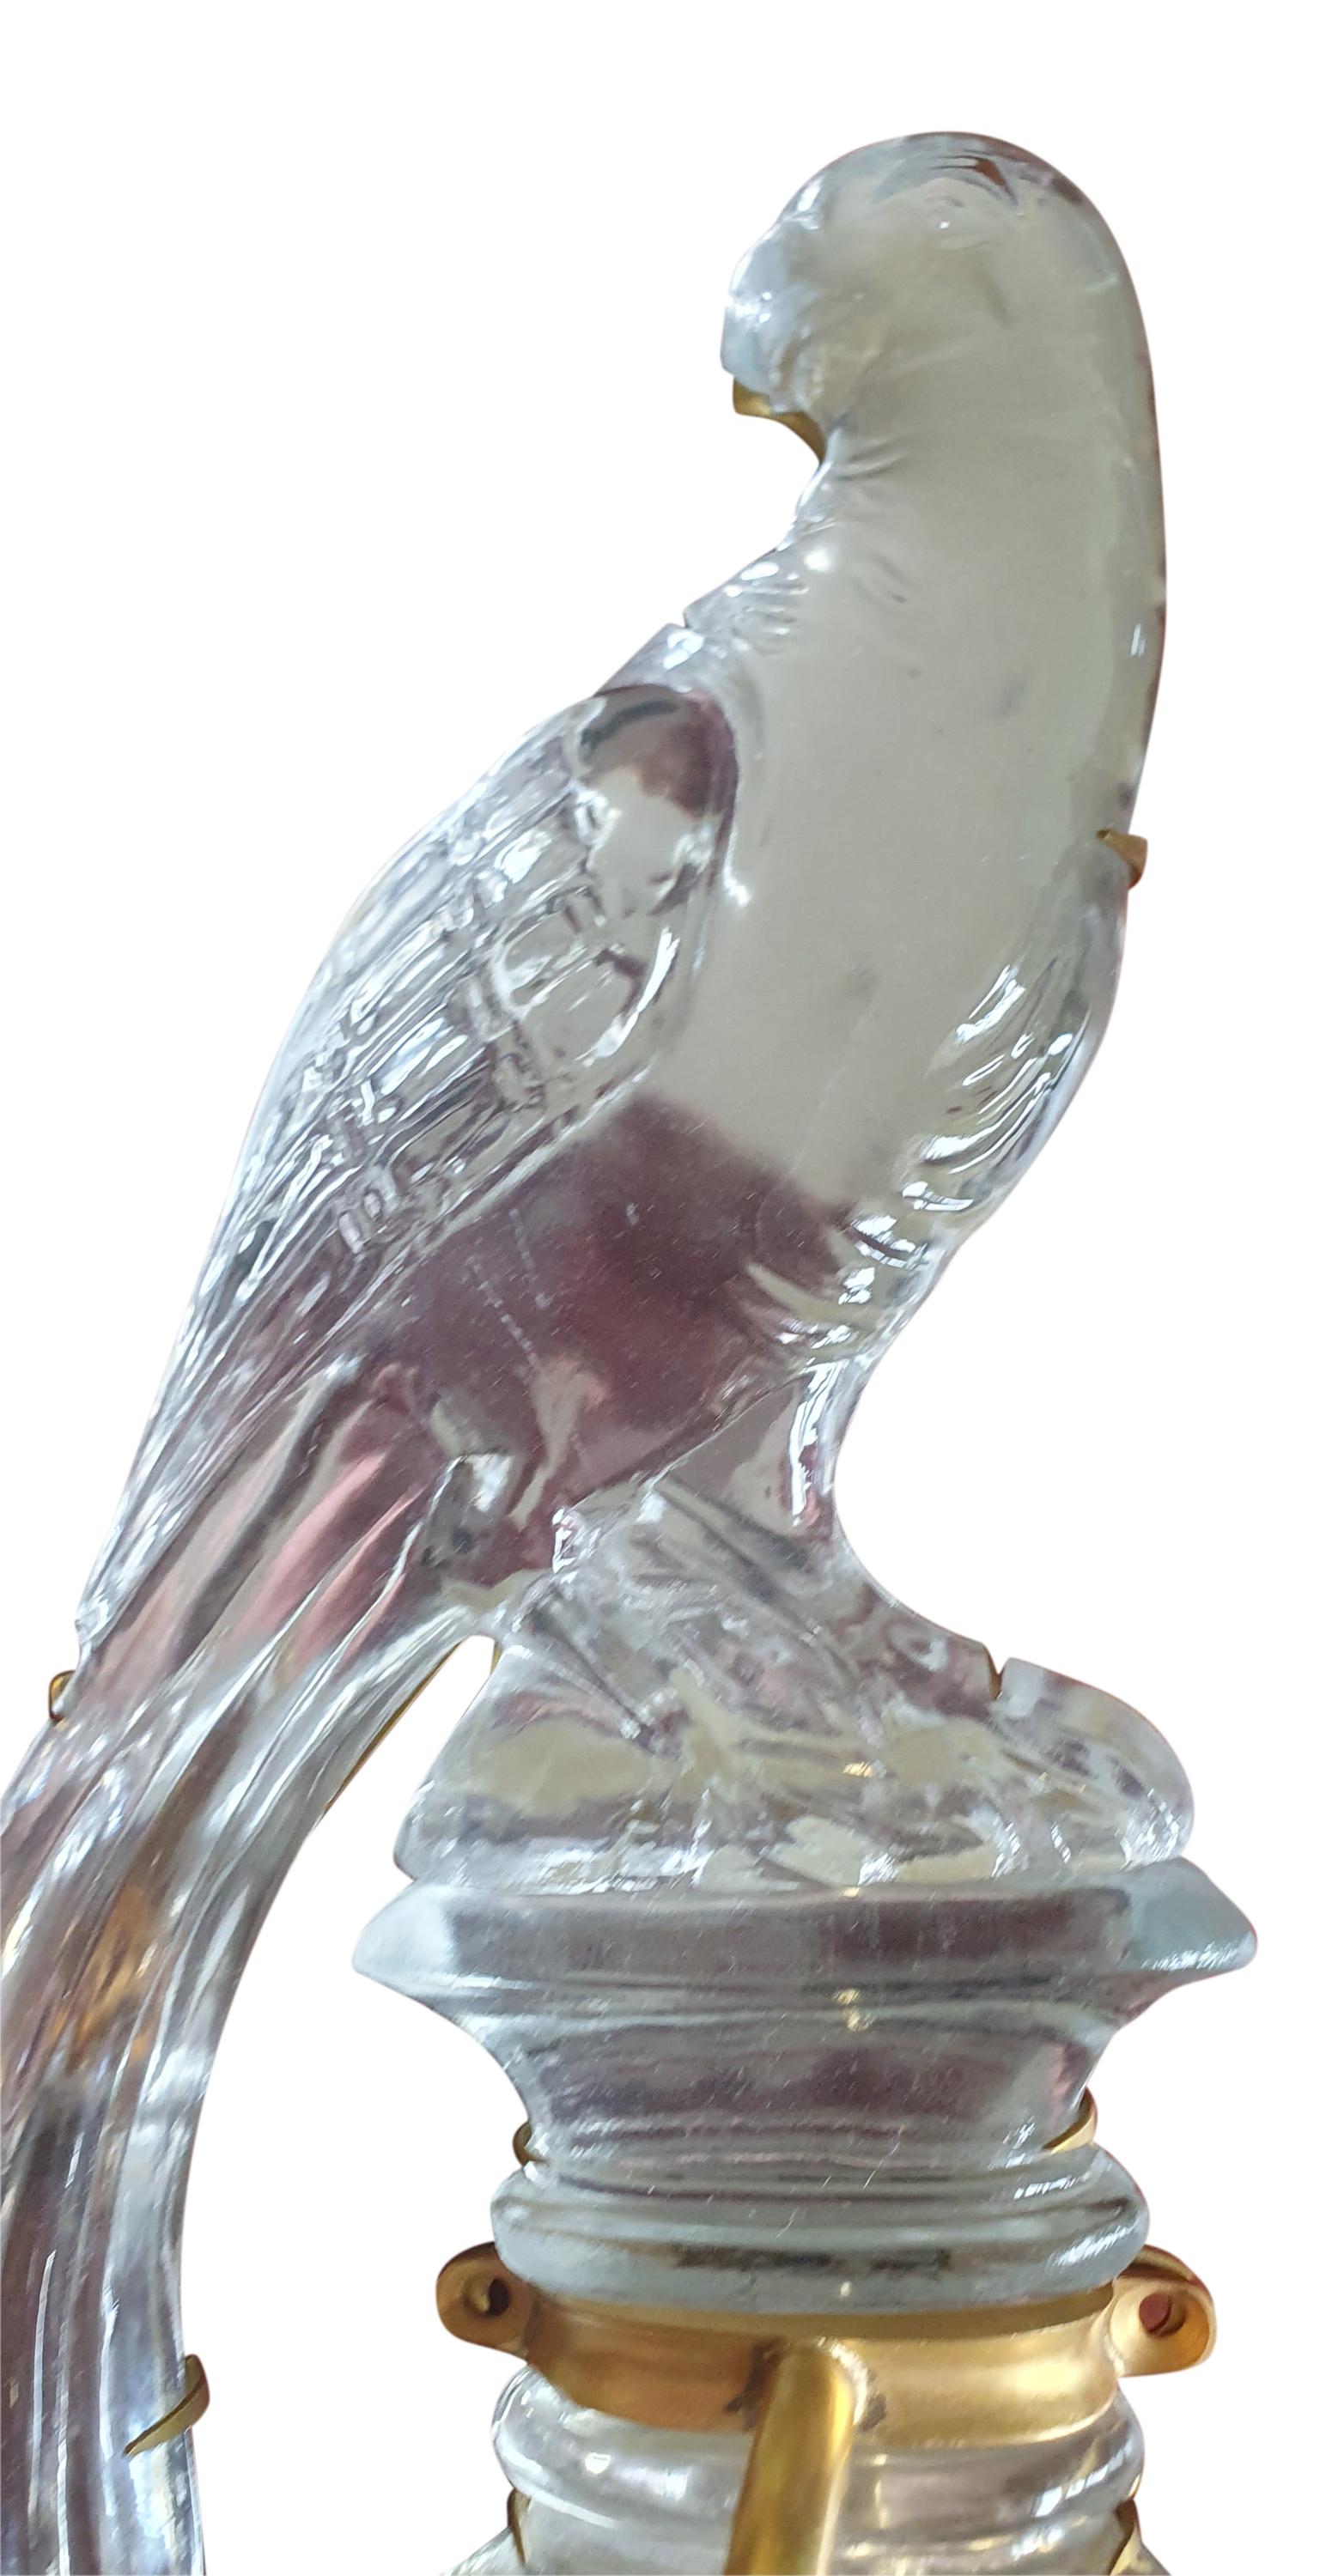 Dies ist eine atemberaubende Maison Baguès einzigen Bohemian Crystal Parrot Wandleuchte in einwandfreiem Zustand. Der Papagei, das Symbol von Baguès, tauchte in den 1920er Jahren in den Kreationen auf und wurde schnell zu einem zeitlosen Symbol der